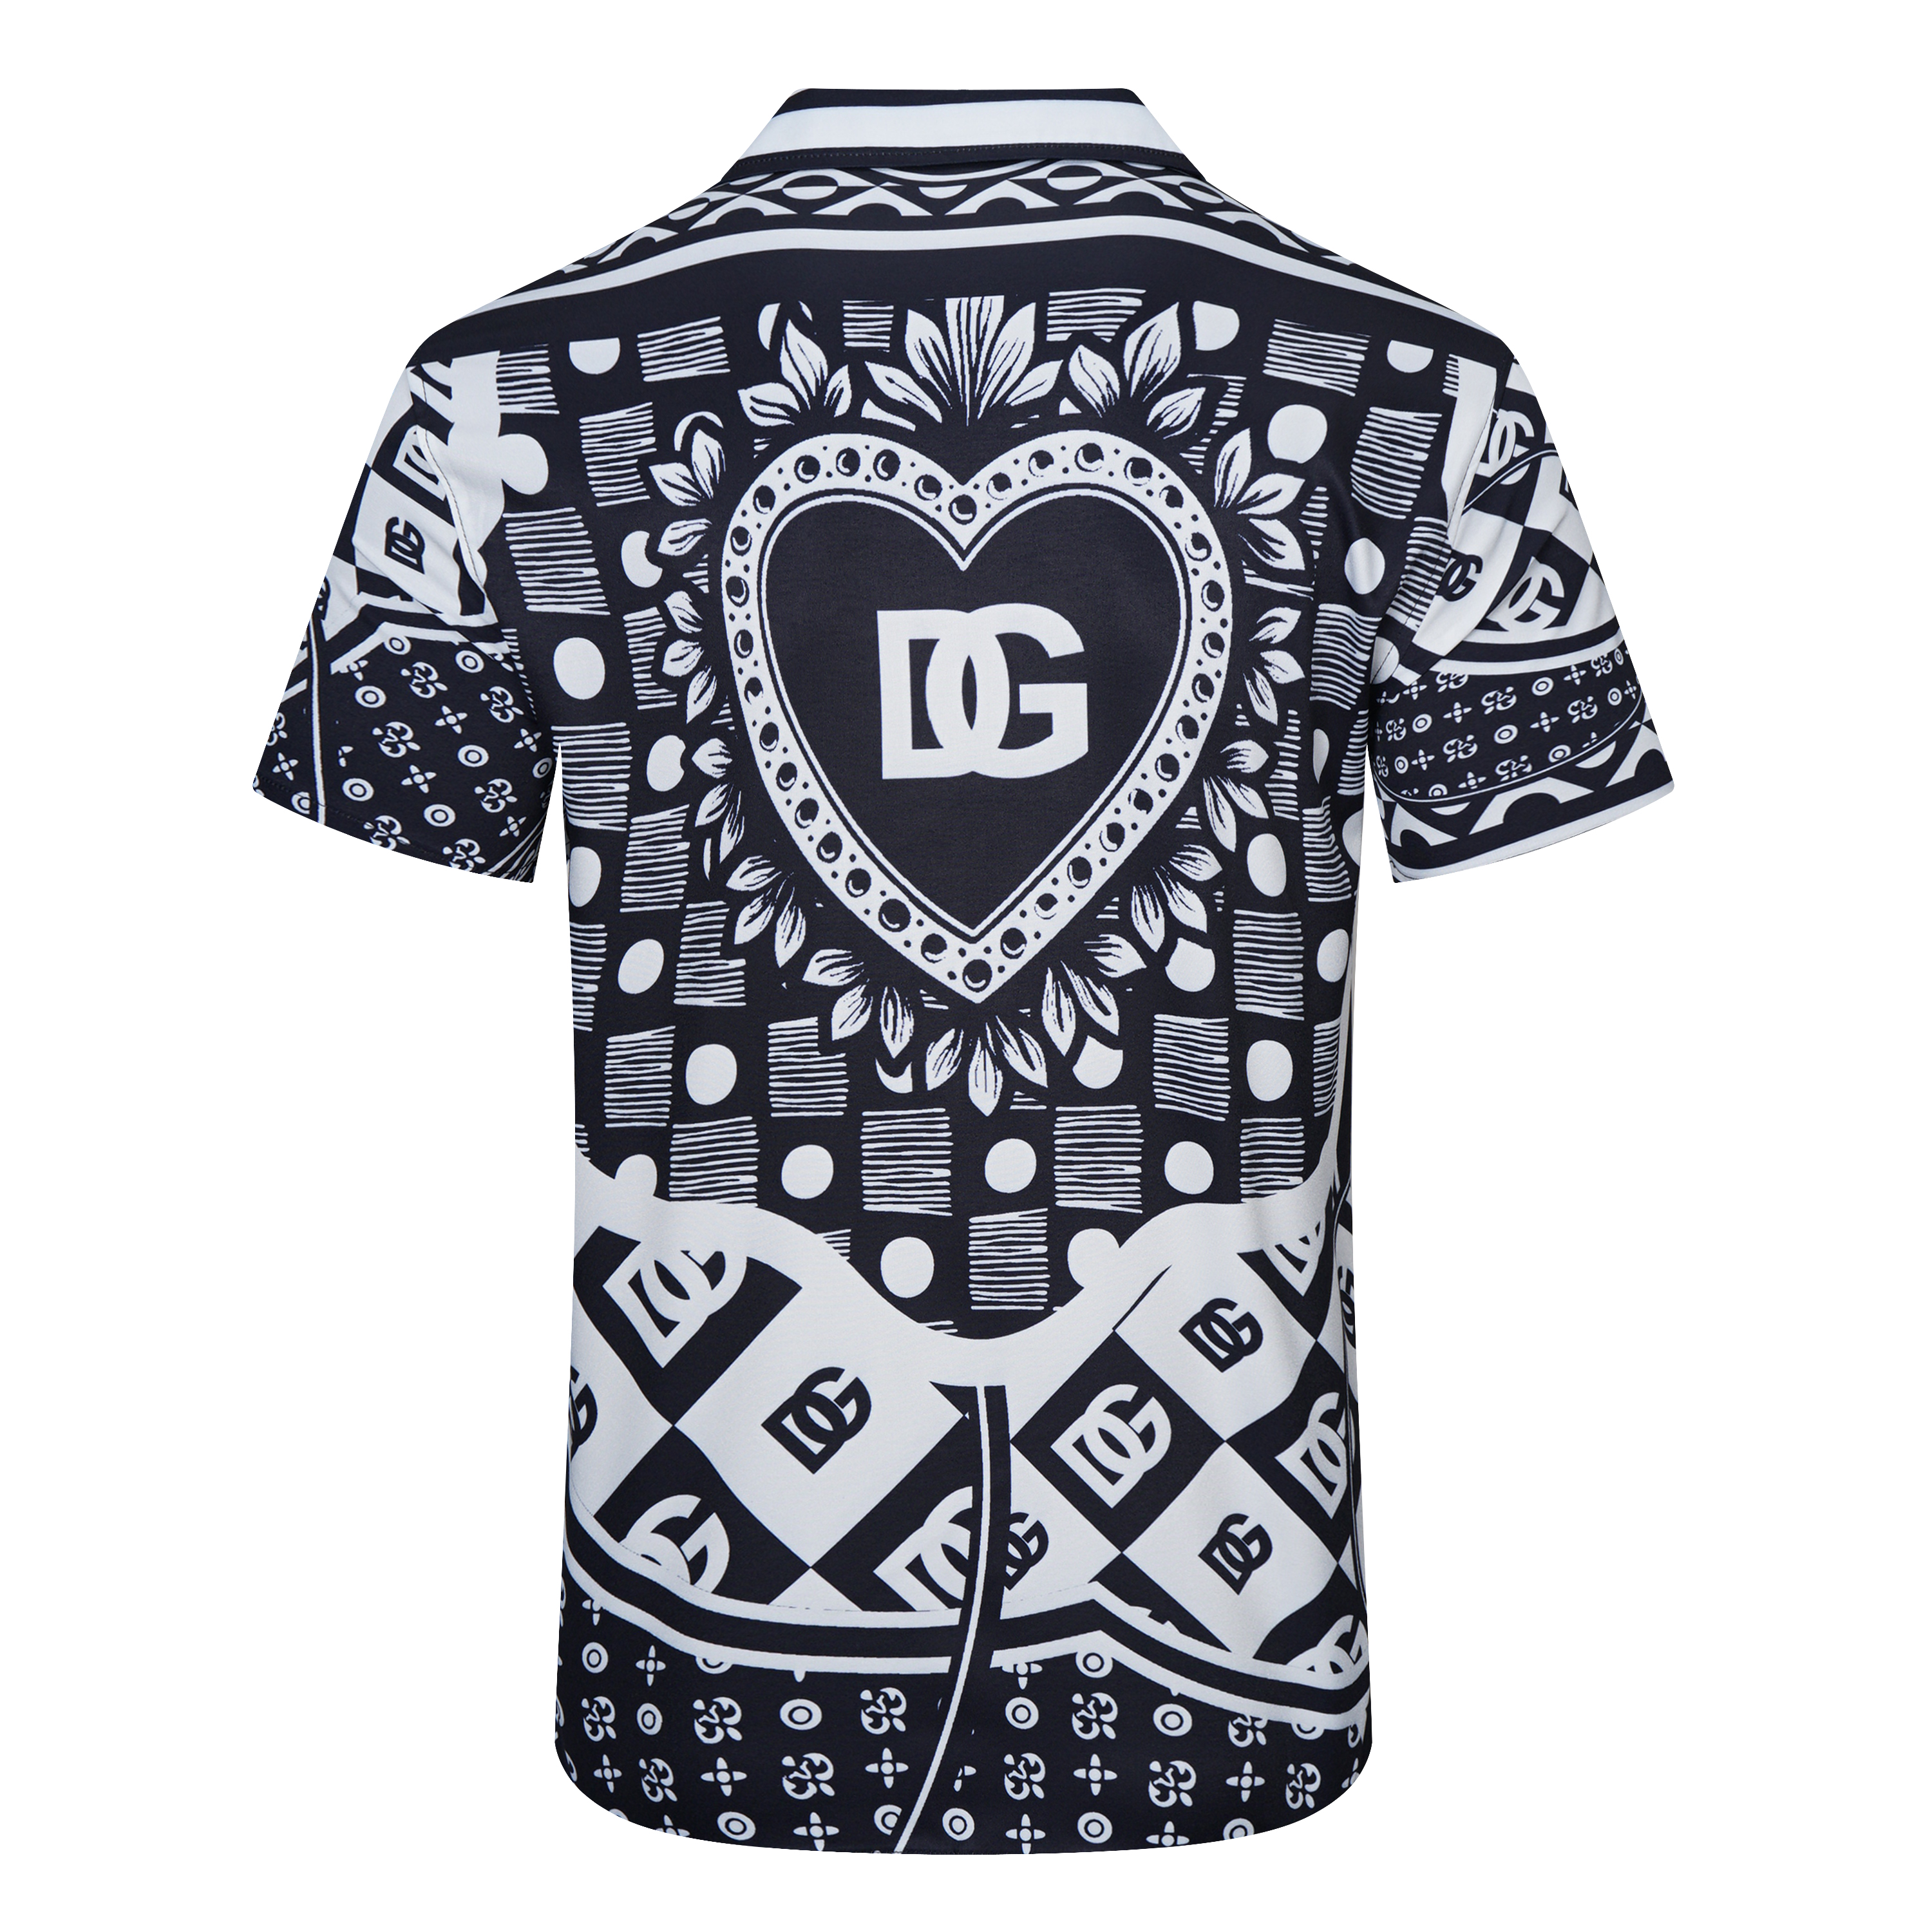 D&G Short Sleeve Shirts For Men # 267638, cheap D&G Shirt, only $33!